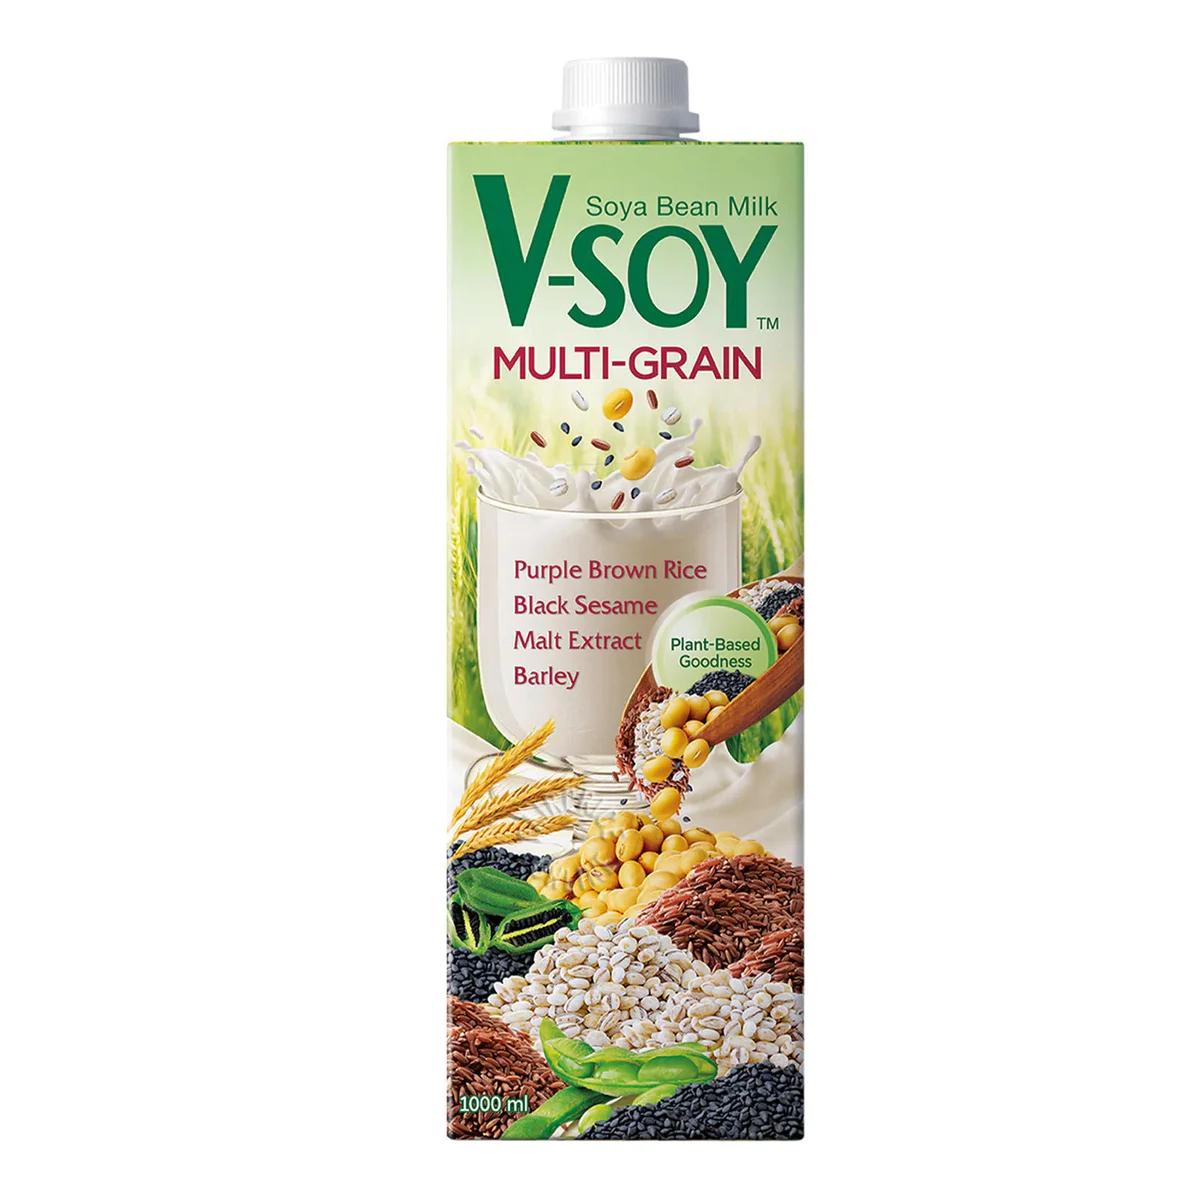 V-SOY Multi-Grain Soya Bean Milk 1Ltr